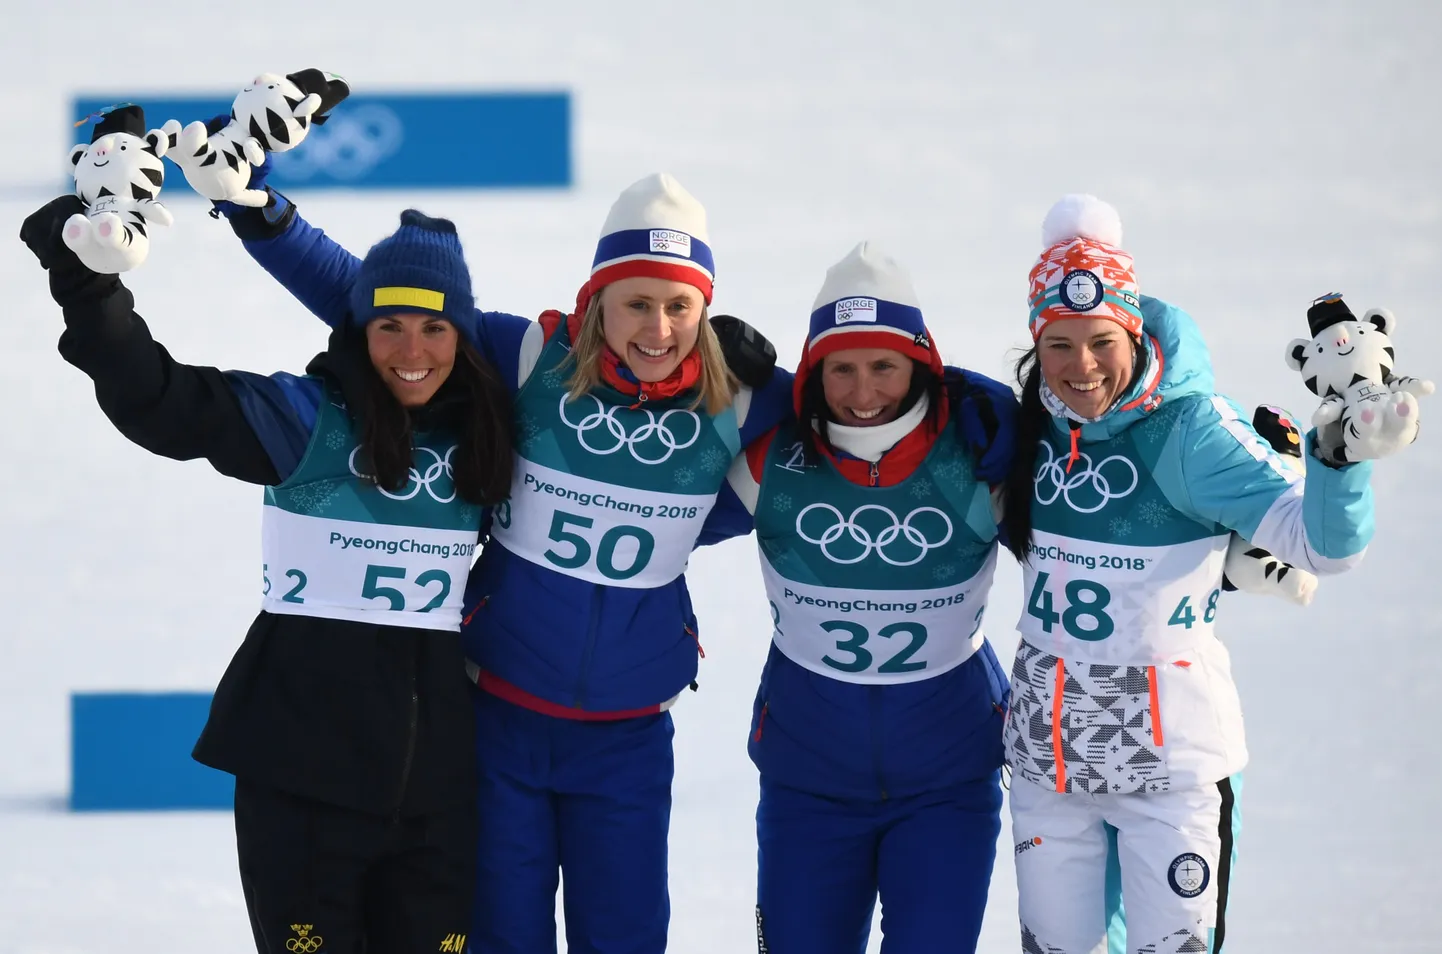 Победительницы 10 километровой лыжной гонки: Шарлотта Калла, Рагнхильд Хага, Марит Бьорген и Криста Пярмакоски